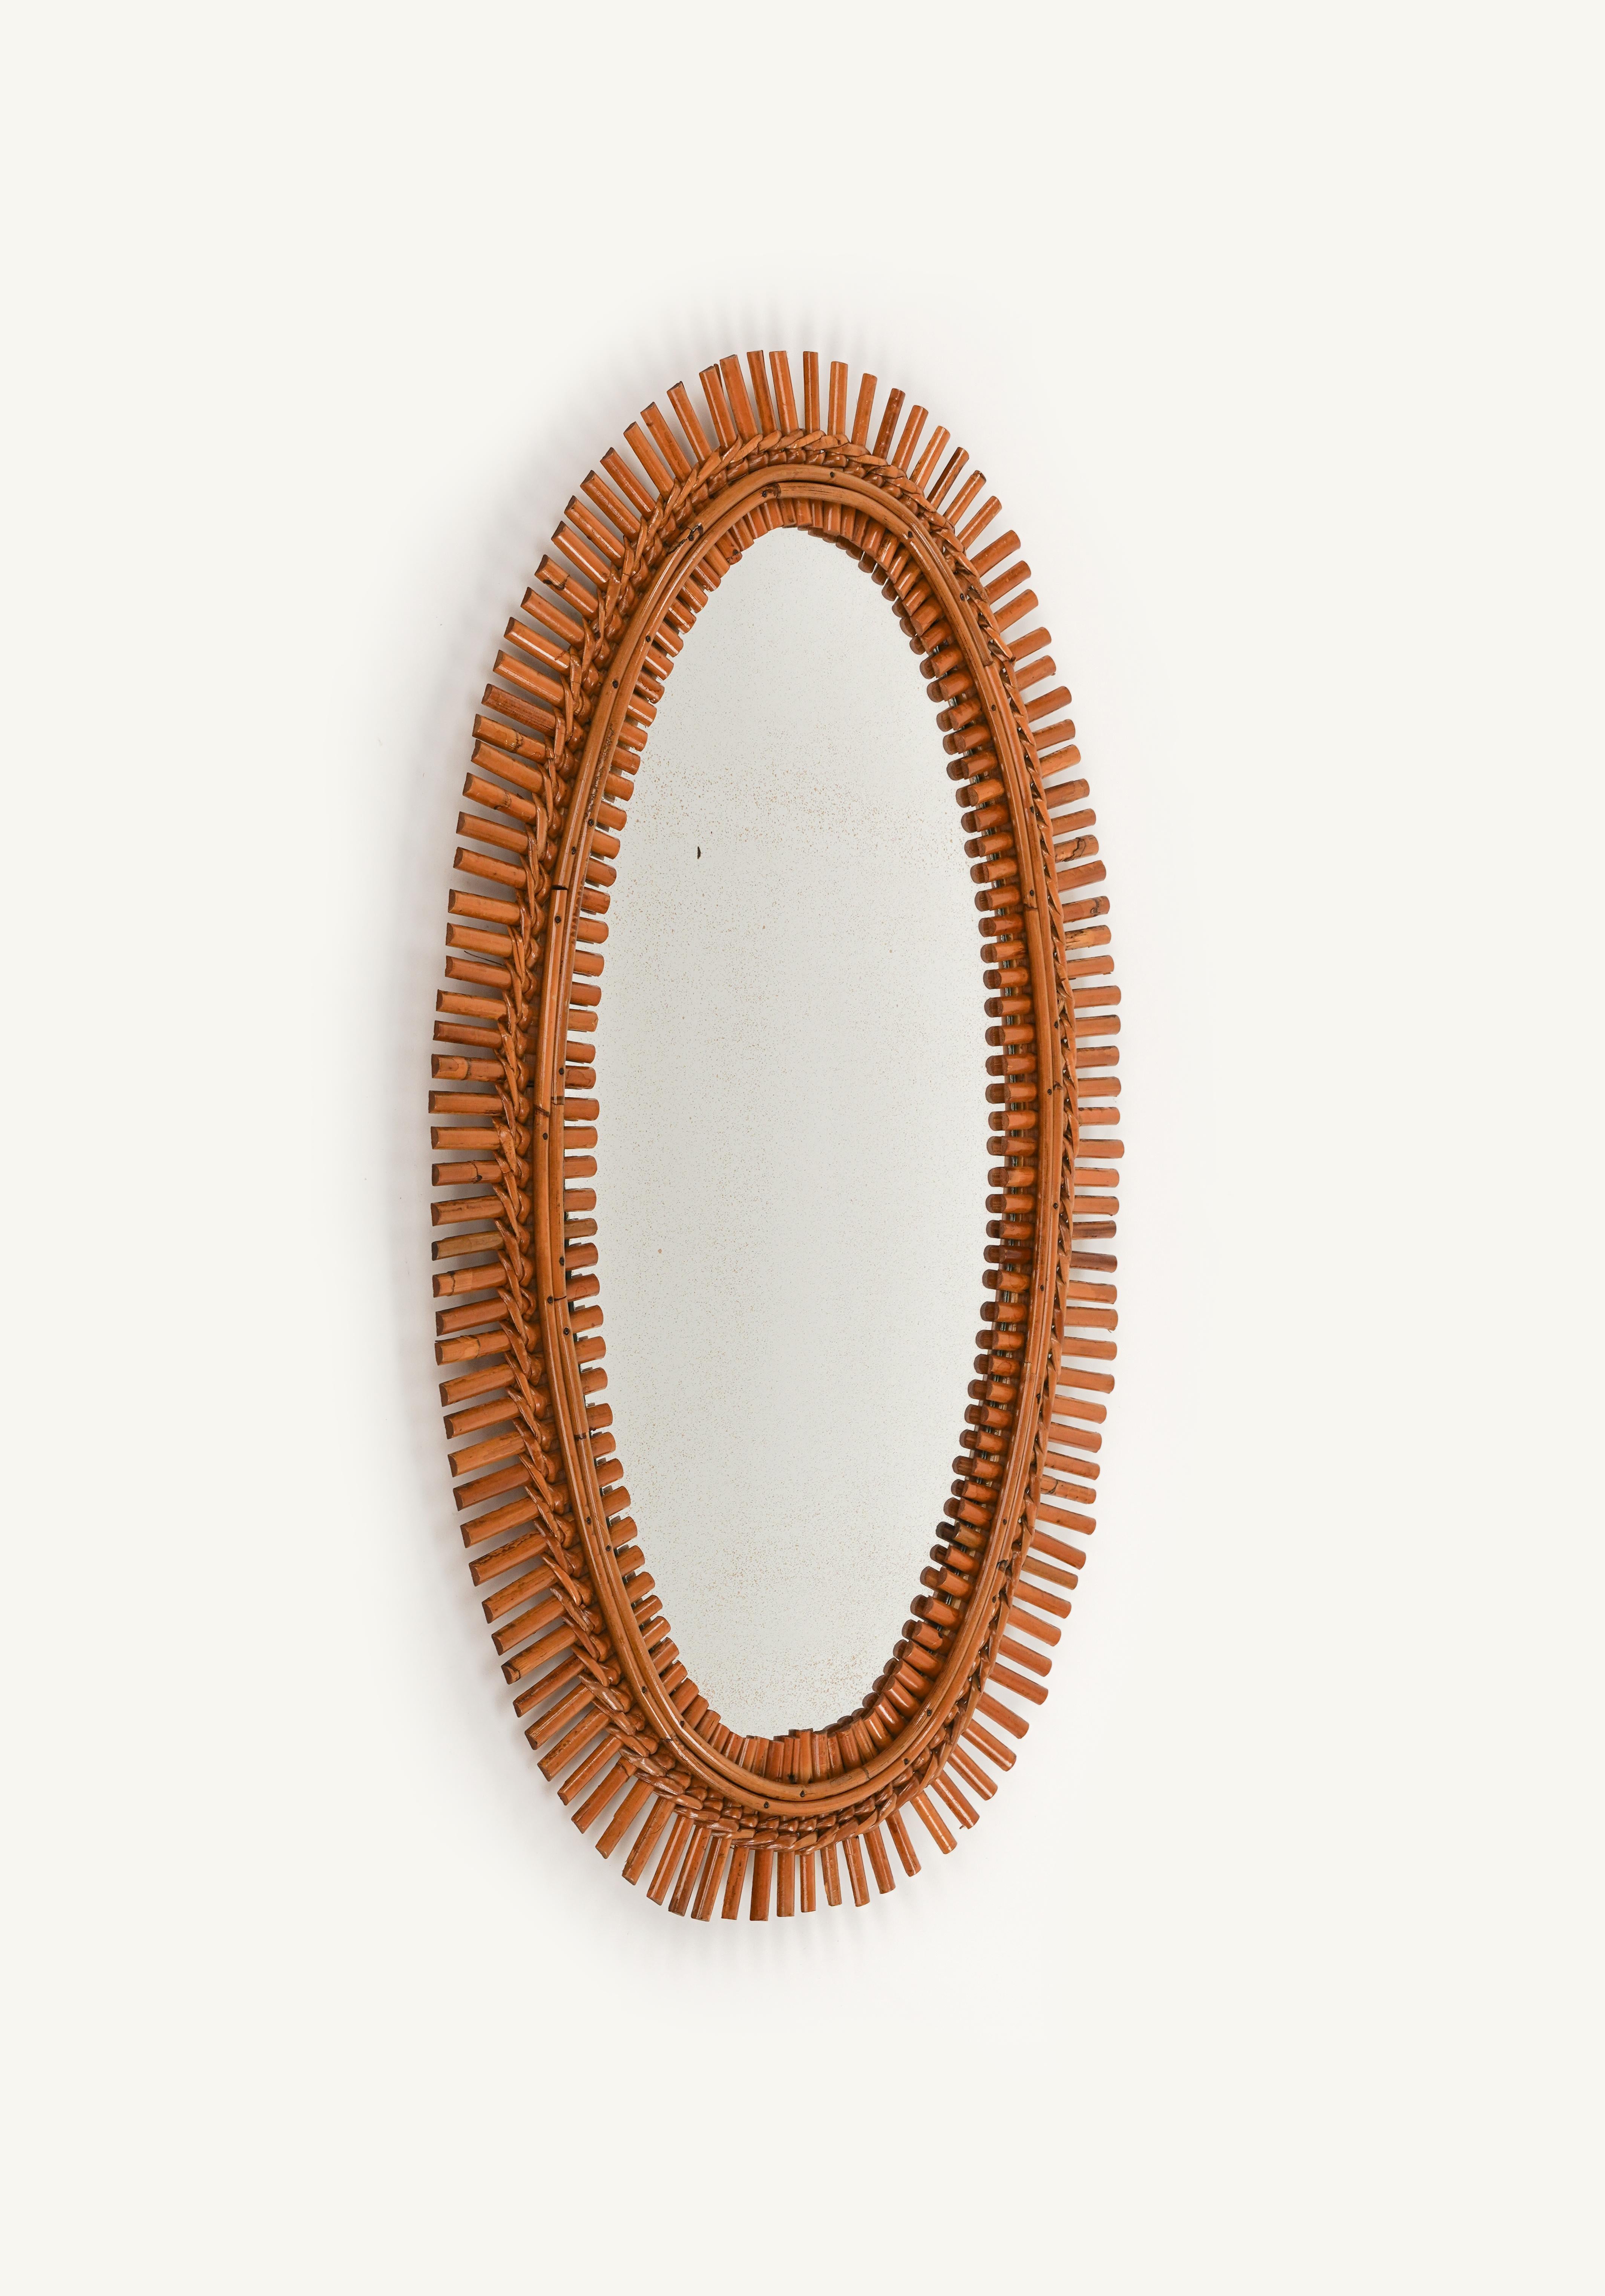 Schöner ovaler Wandspiegel aus Rattan und Bambus im Stil von Franco Albini aus der Mitte des Jahrhunderts.

Hergestellt in Italien in den 1960er Jahren.

Der Spiegel ist original aus der Zeit ist charmant Patina.